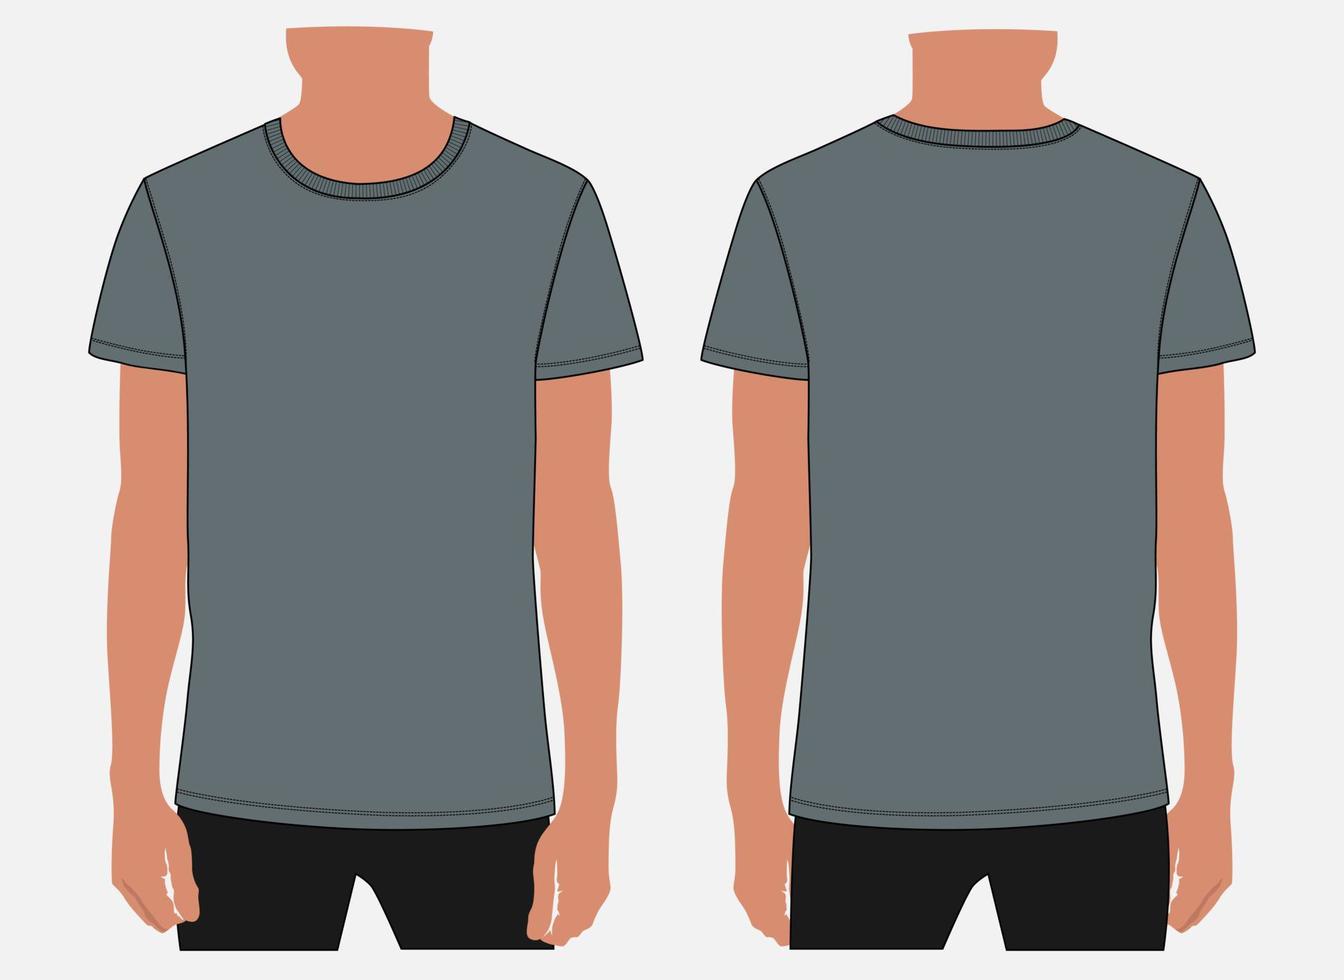 plantilla de maqueta de ilustración vectorial de camiseta de manga corta para hombres y niños. vector